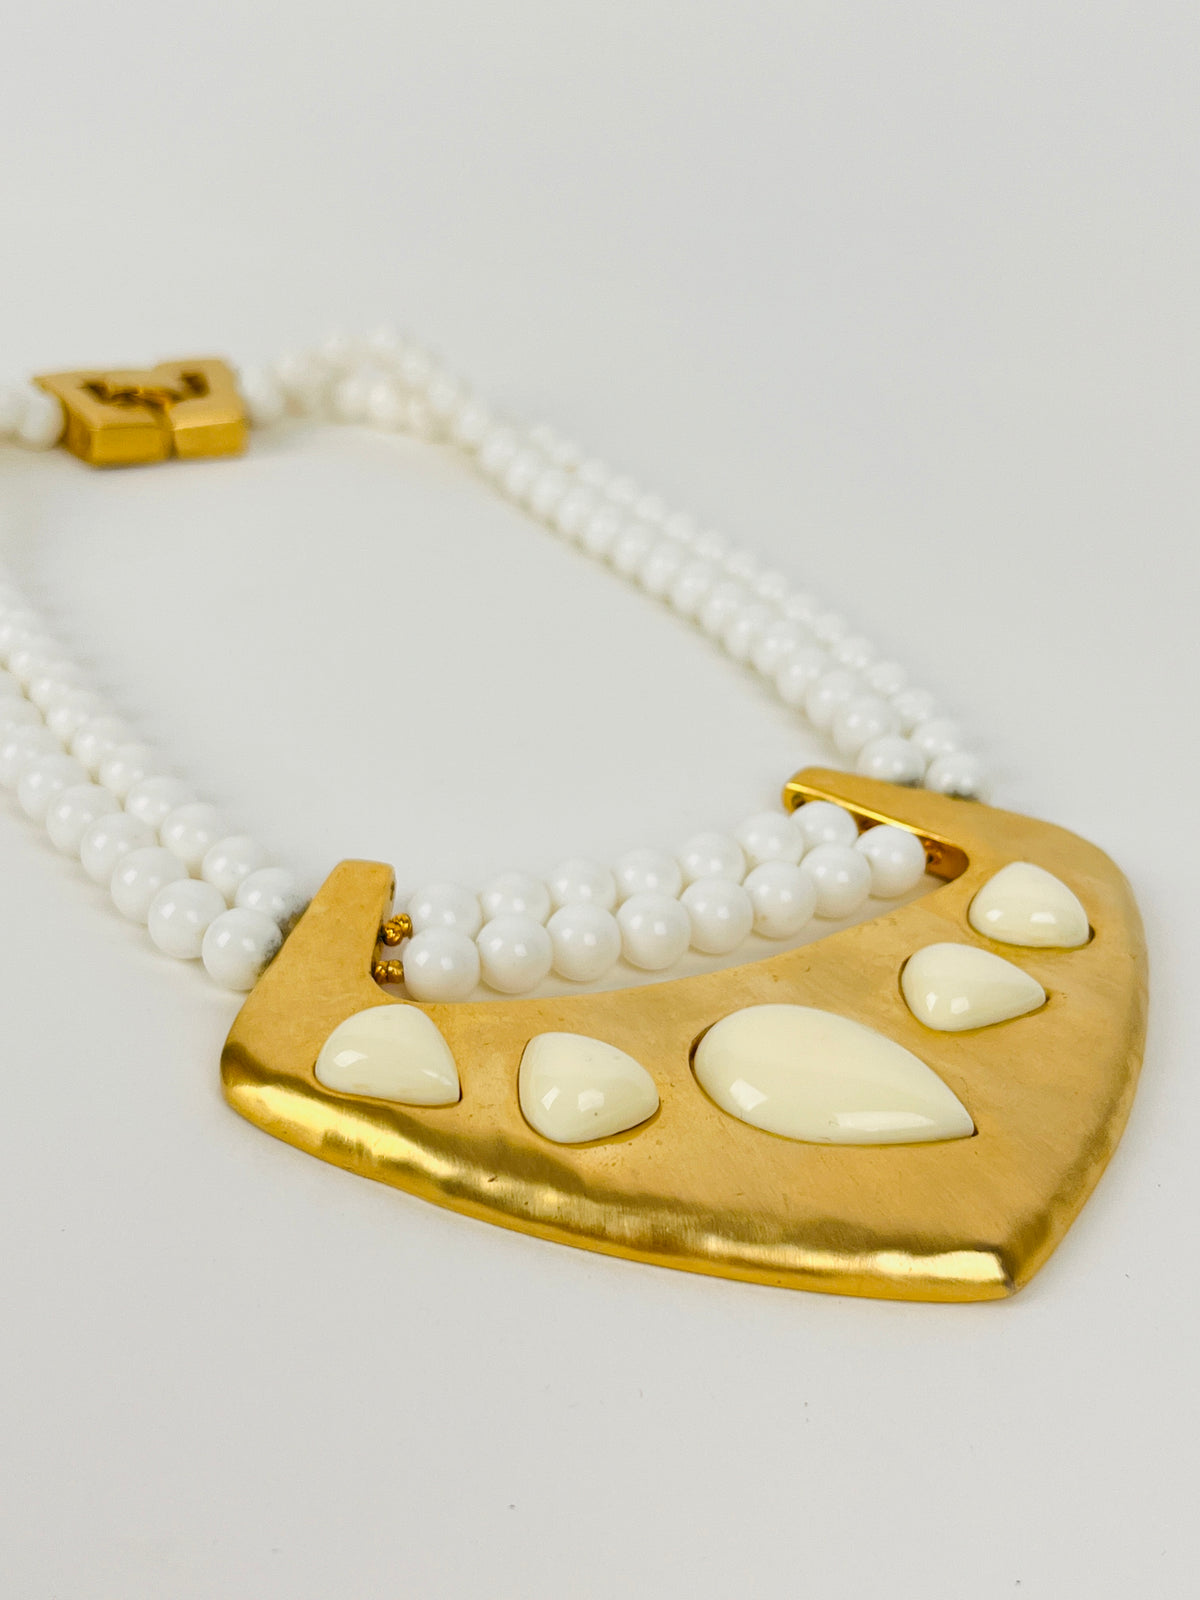 Vintage Gold Tone Pendant Necklace